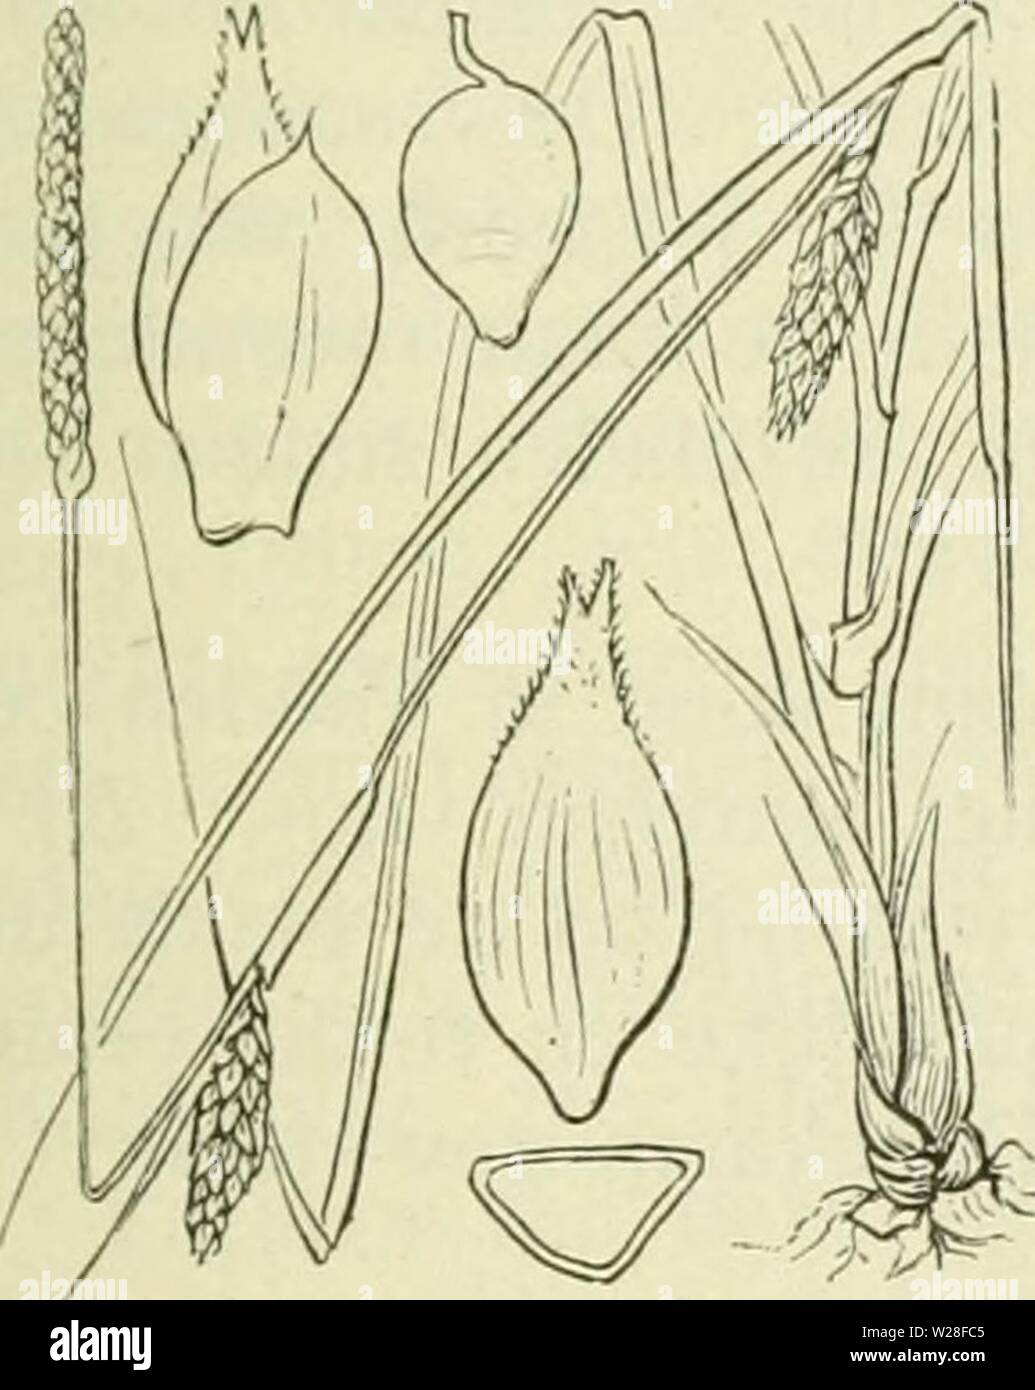 Archiv Bild von Seite 444 De flora van Nederland (1909-11). De flora van Nederland defloravannederl 01 heuk Jahr: 1909-11. Carex strigosa Abb. 326. zaani auch Ina als iinitjes Ile. Deze (fiÂ". 32 (5) zijn drickantit, '- Iancctvormitj ;- ellipsoÃ ¯ discli, ca. 3 mM lanj,', veelnervi. u, noiei (Jeliji&lt; in der Höhle zeer iiei&lt; notten snavel versmald. Het mannelijke aartje ist los - bloemij;, Smal, verlcn. ud, tof 5 cM lanf,', de kafjes zijn vaak iets bruinachtig' nicht stevijje, Groene middenstreep. De vruchten zijn Zeer klein, nog nicht 2 mM lang, eirond, driekanti. u. Â. 6-10 dM. Mei, Juni. Voorkomen Stockfoto